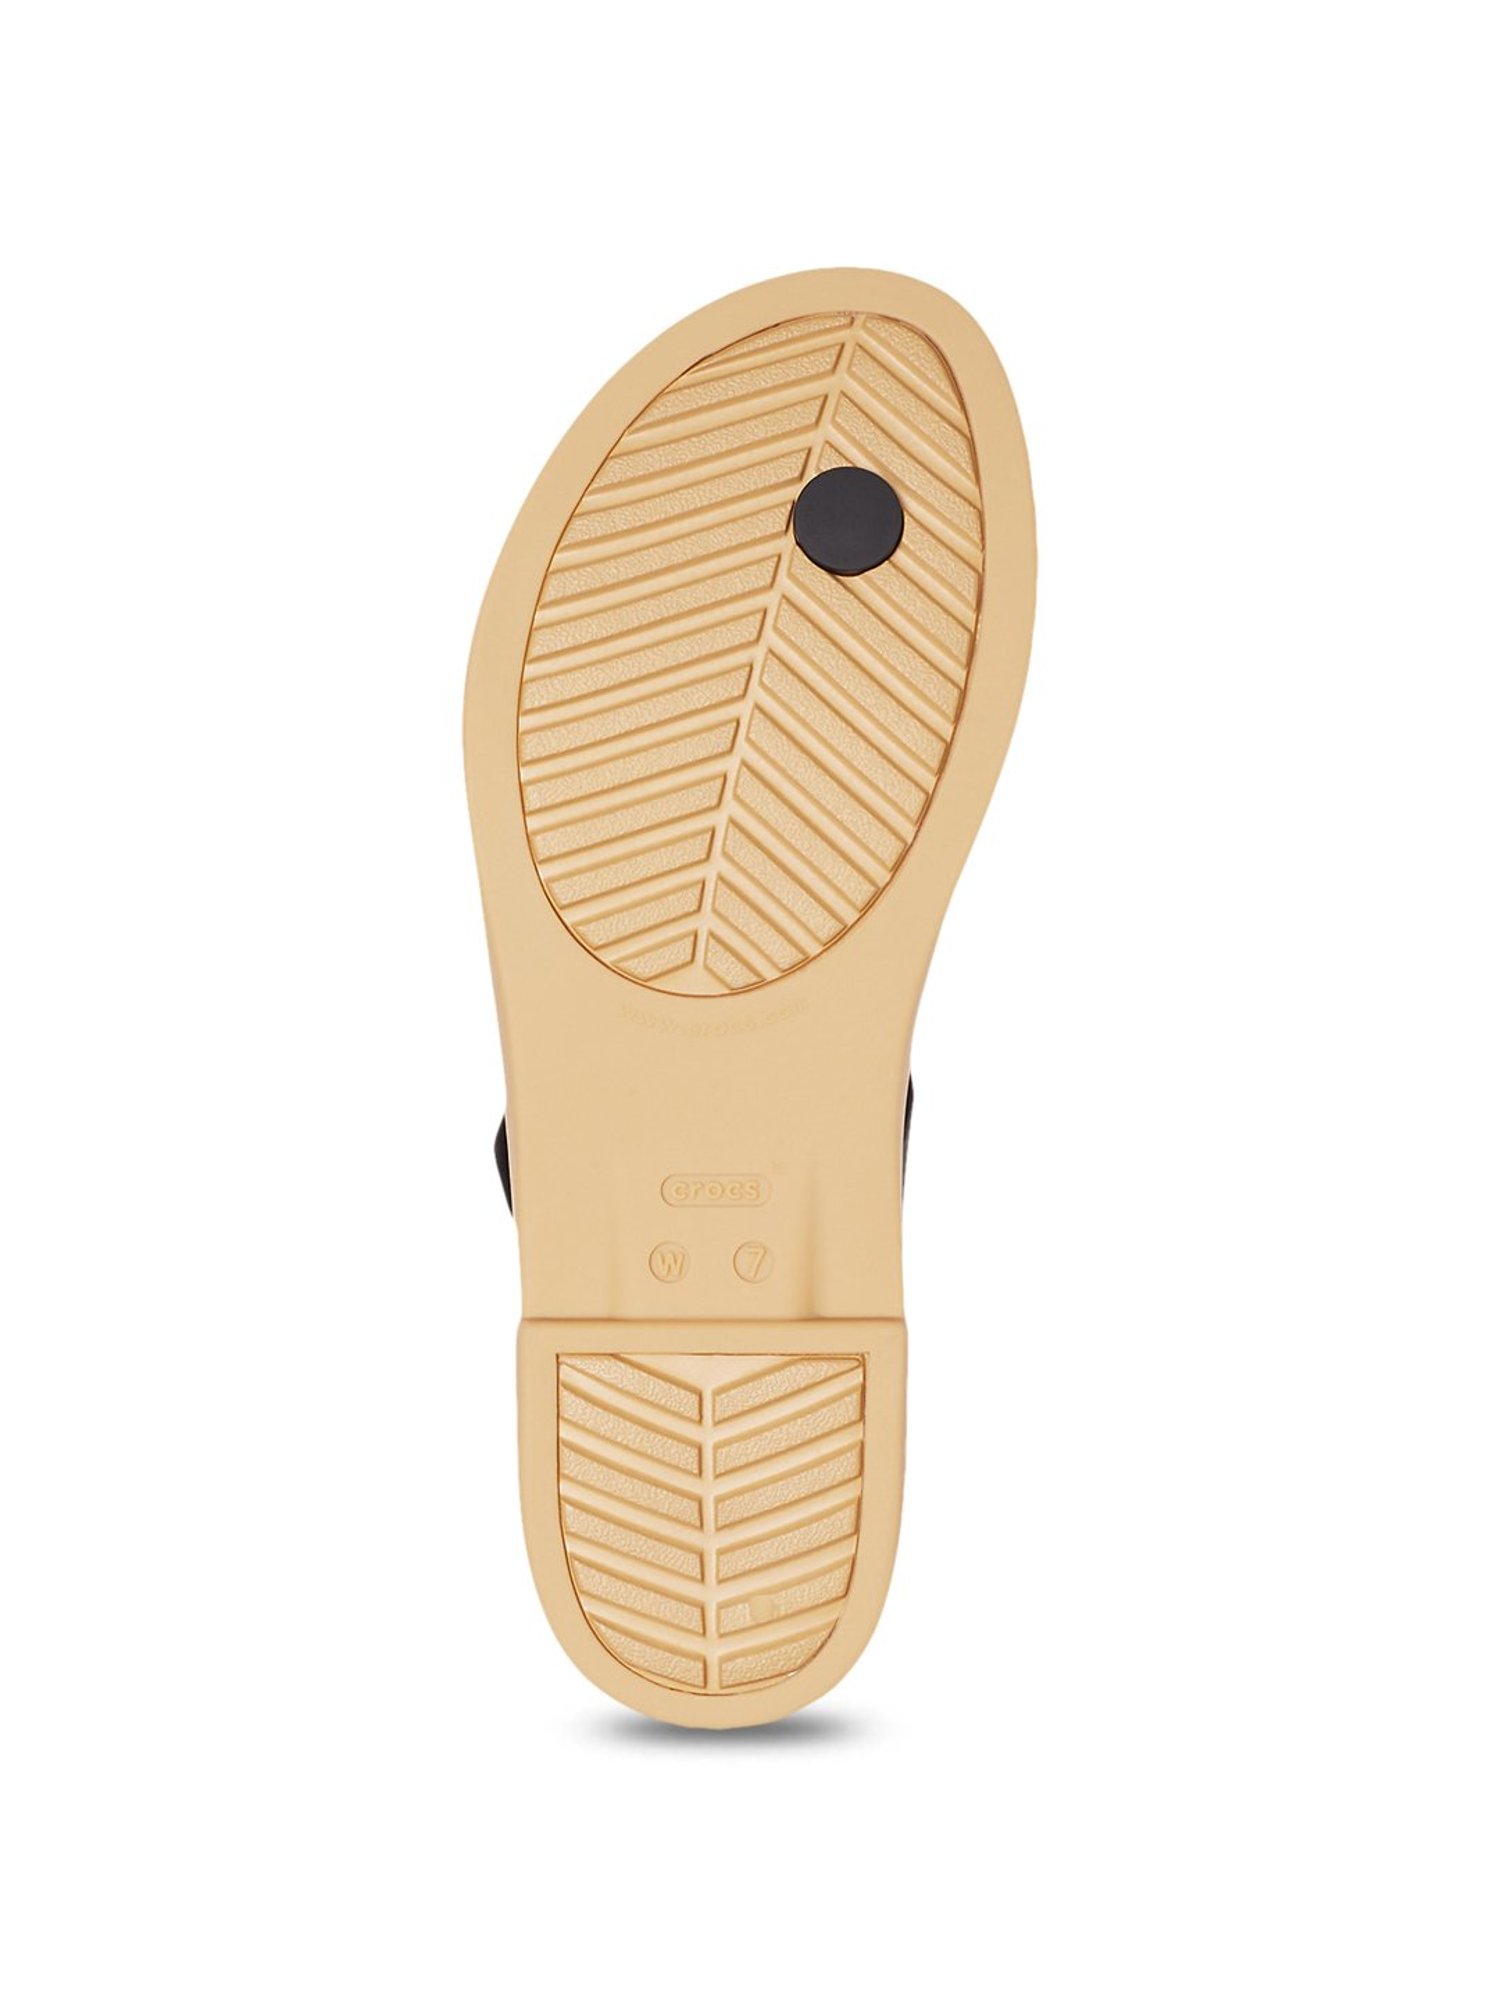 Buy Crocs Tulum Black Casual Sandals for Women at Best Price @ Tata CLiQ